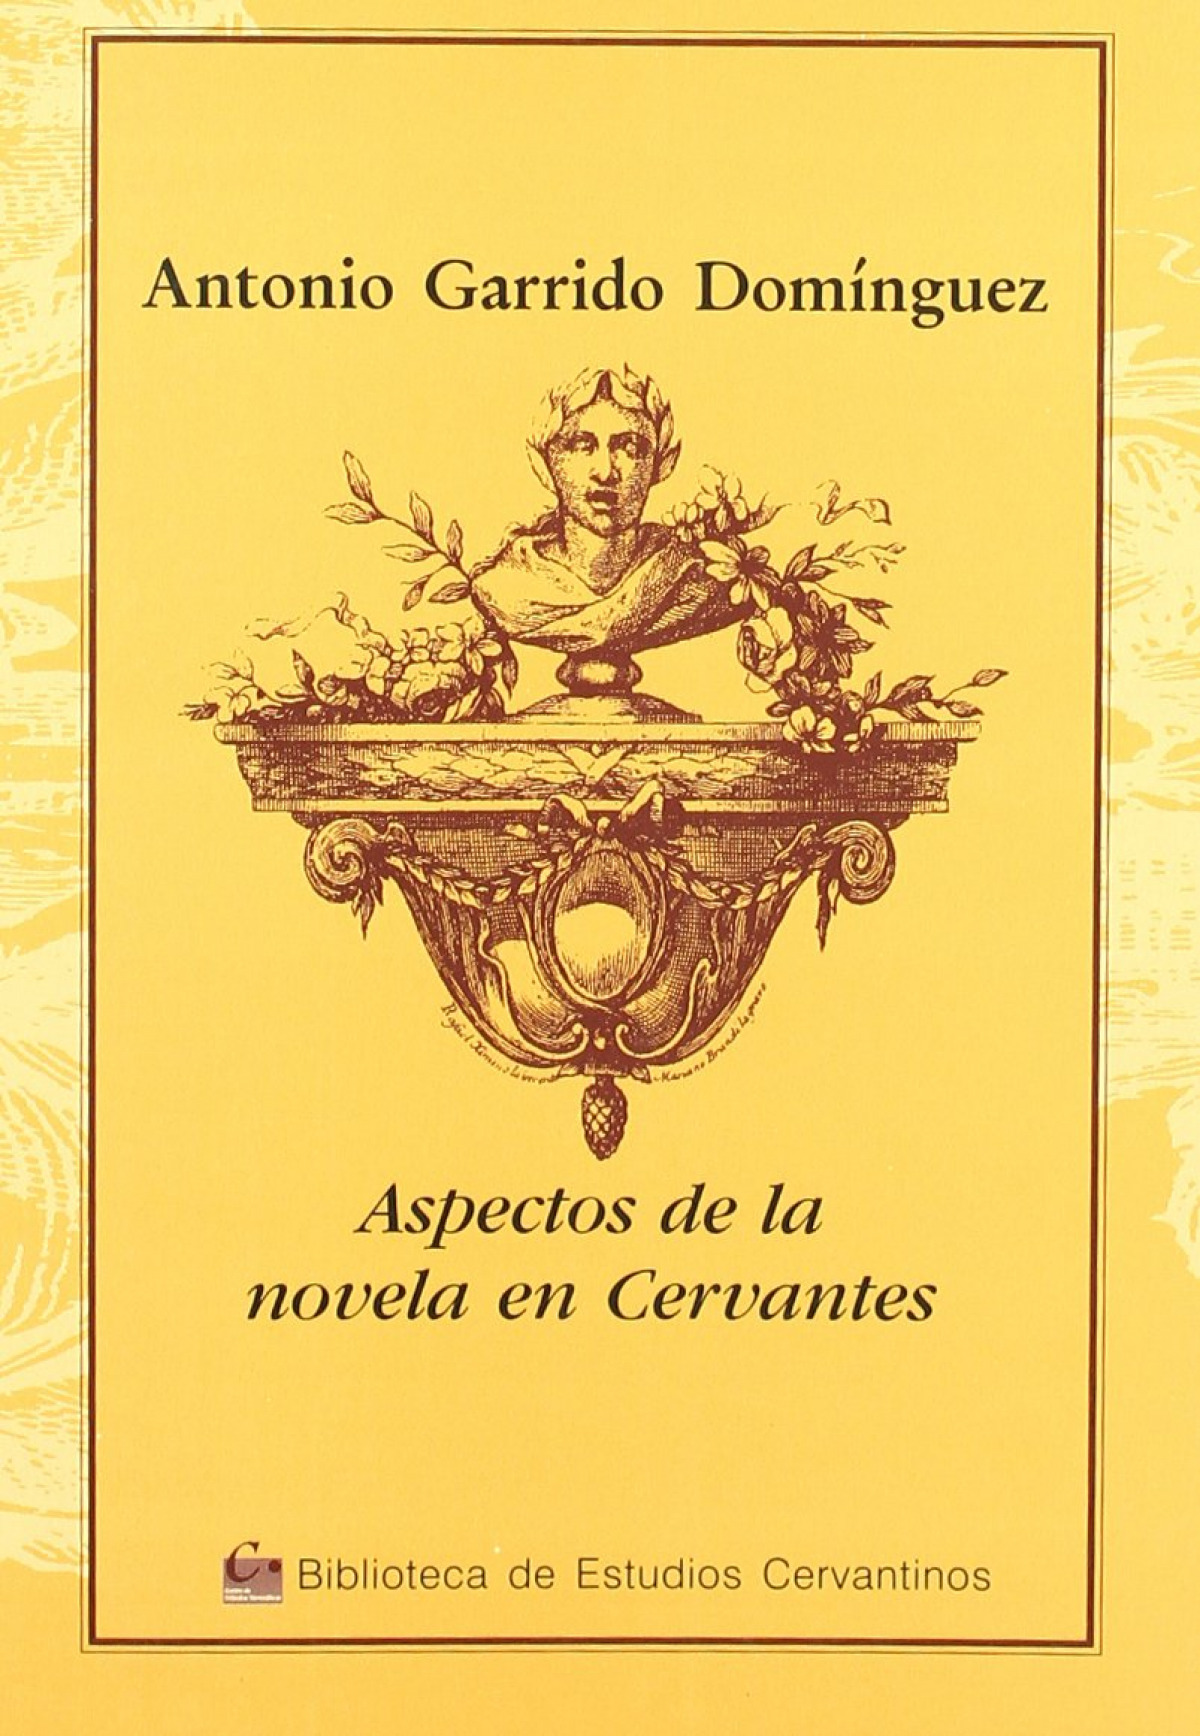 Aspectos novela cervantes - Garrido, Antonio